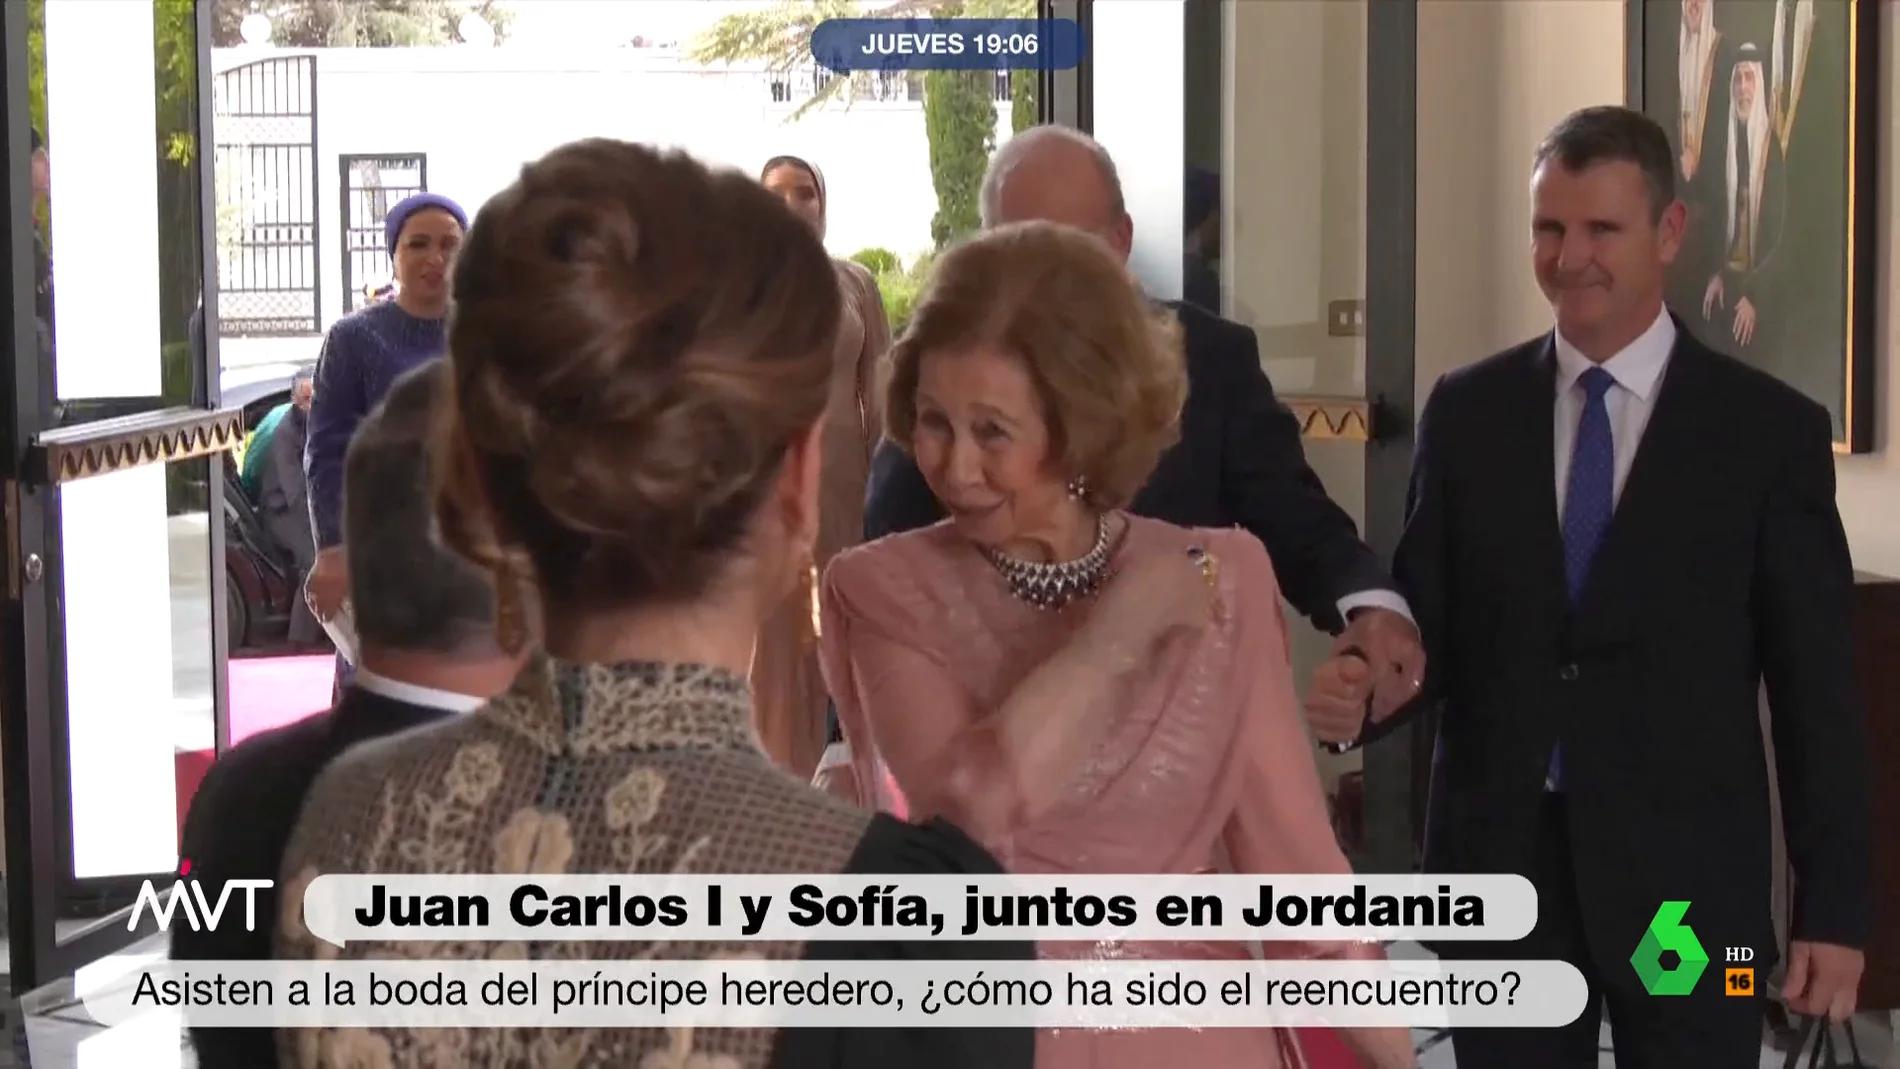 Iñaki López le 'lee los labios' a la reina Sofía tras adelantarse al rey Juan Carlos: "Este de atrás no lleva entrada"